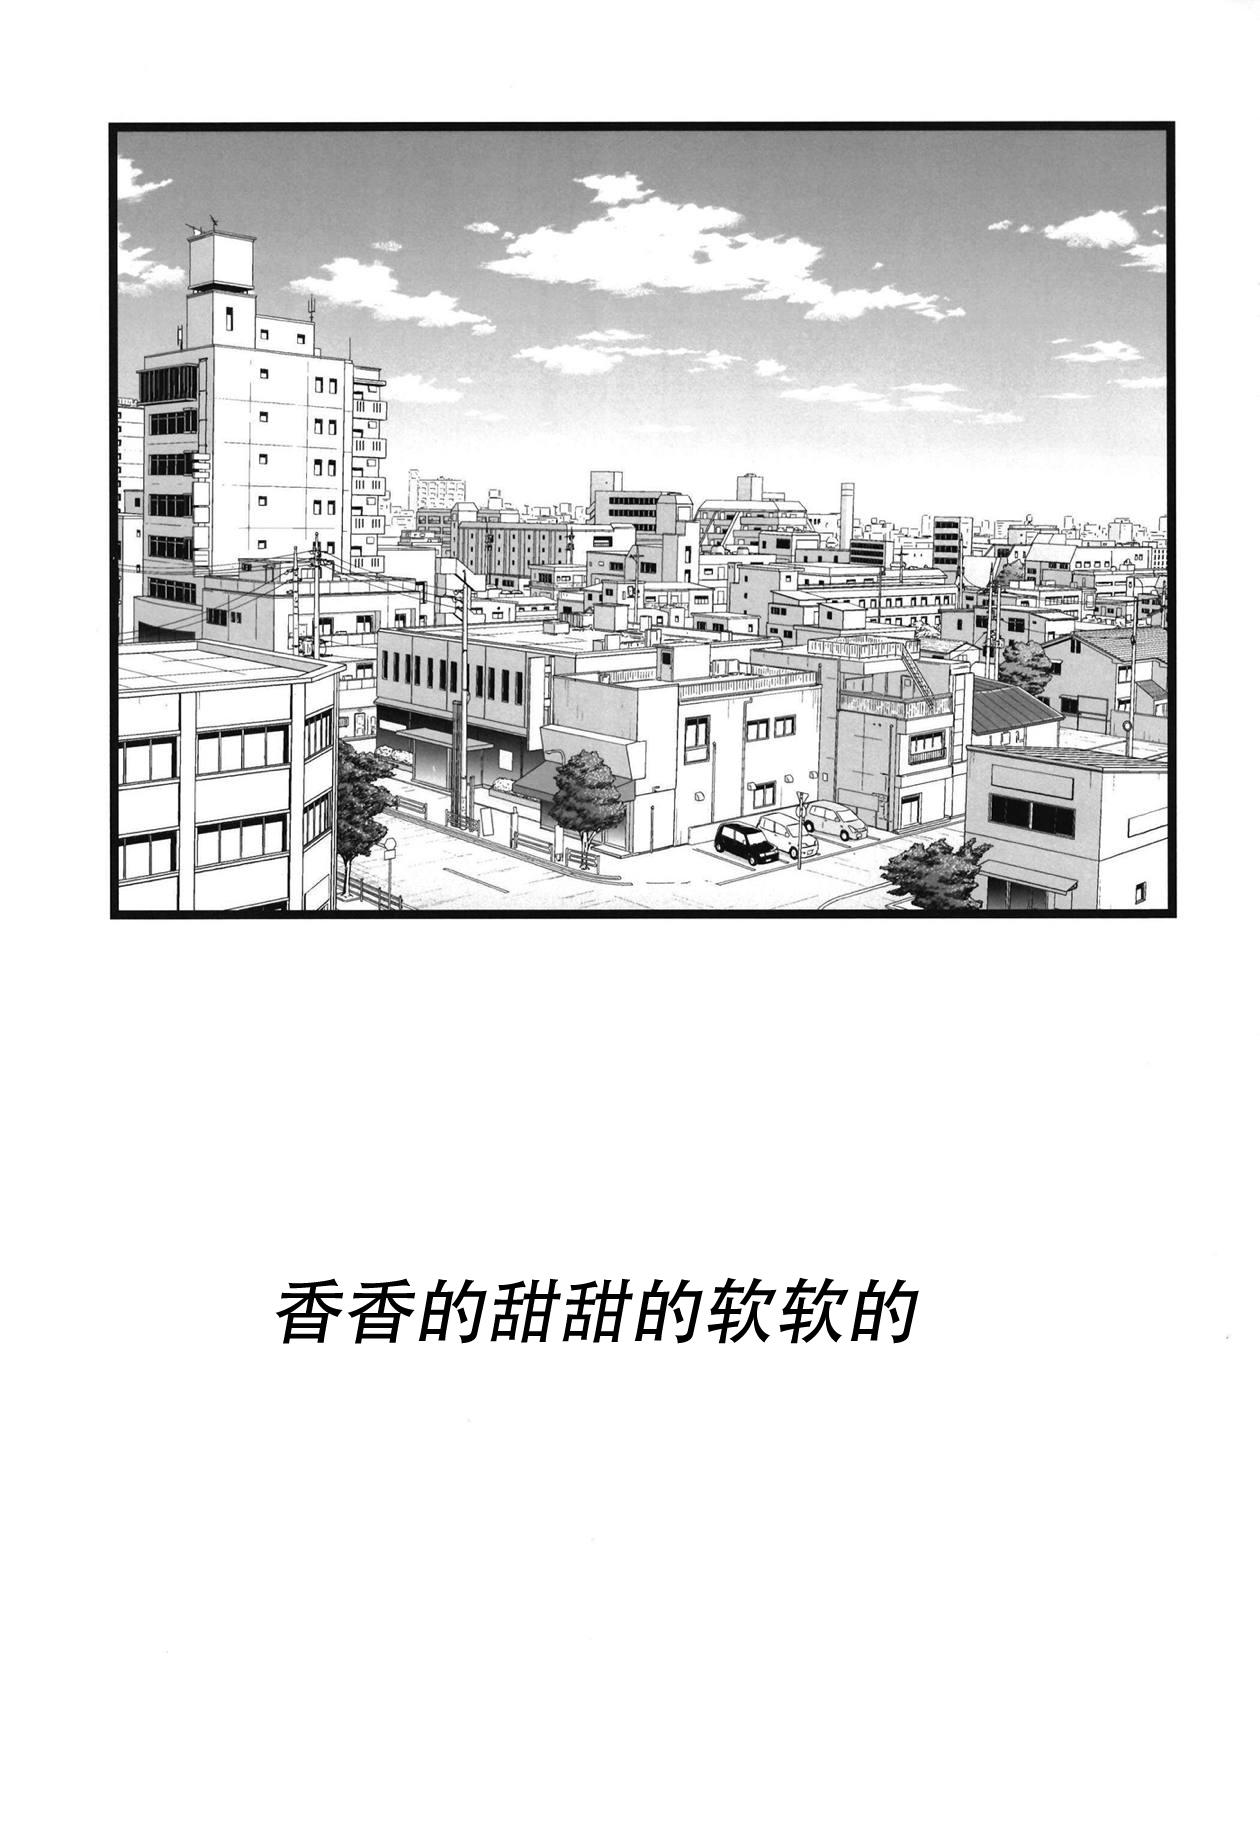 Perfect Ass Amakute Horonigai Sekai - Bang dream Shemales - Page 3